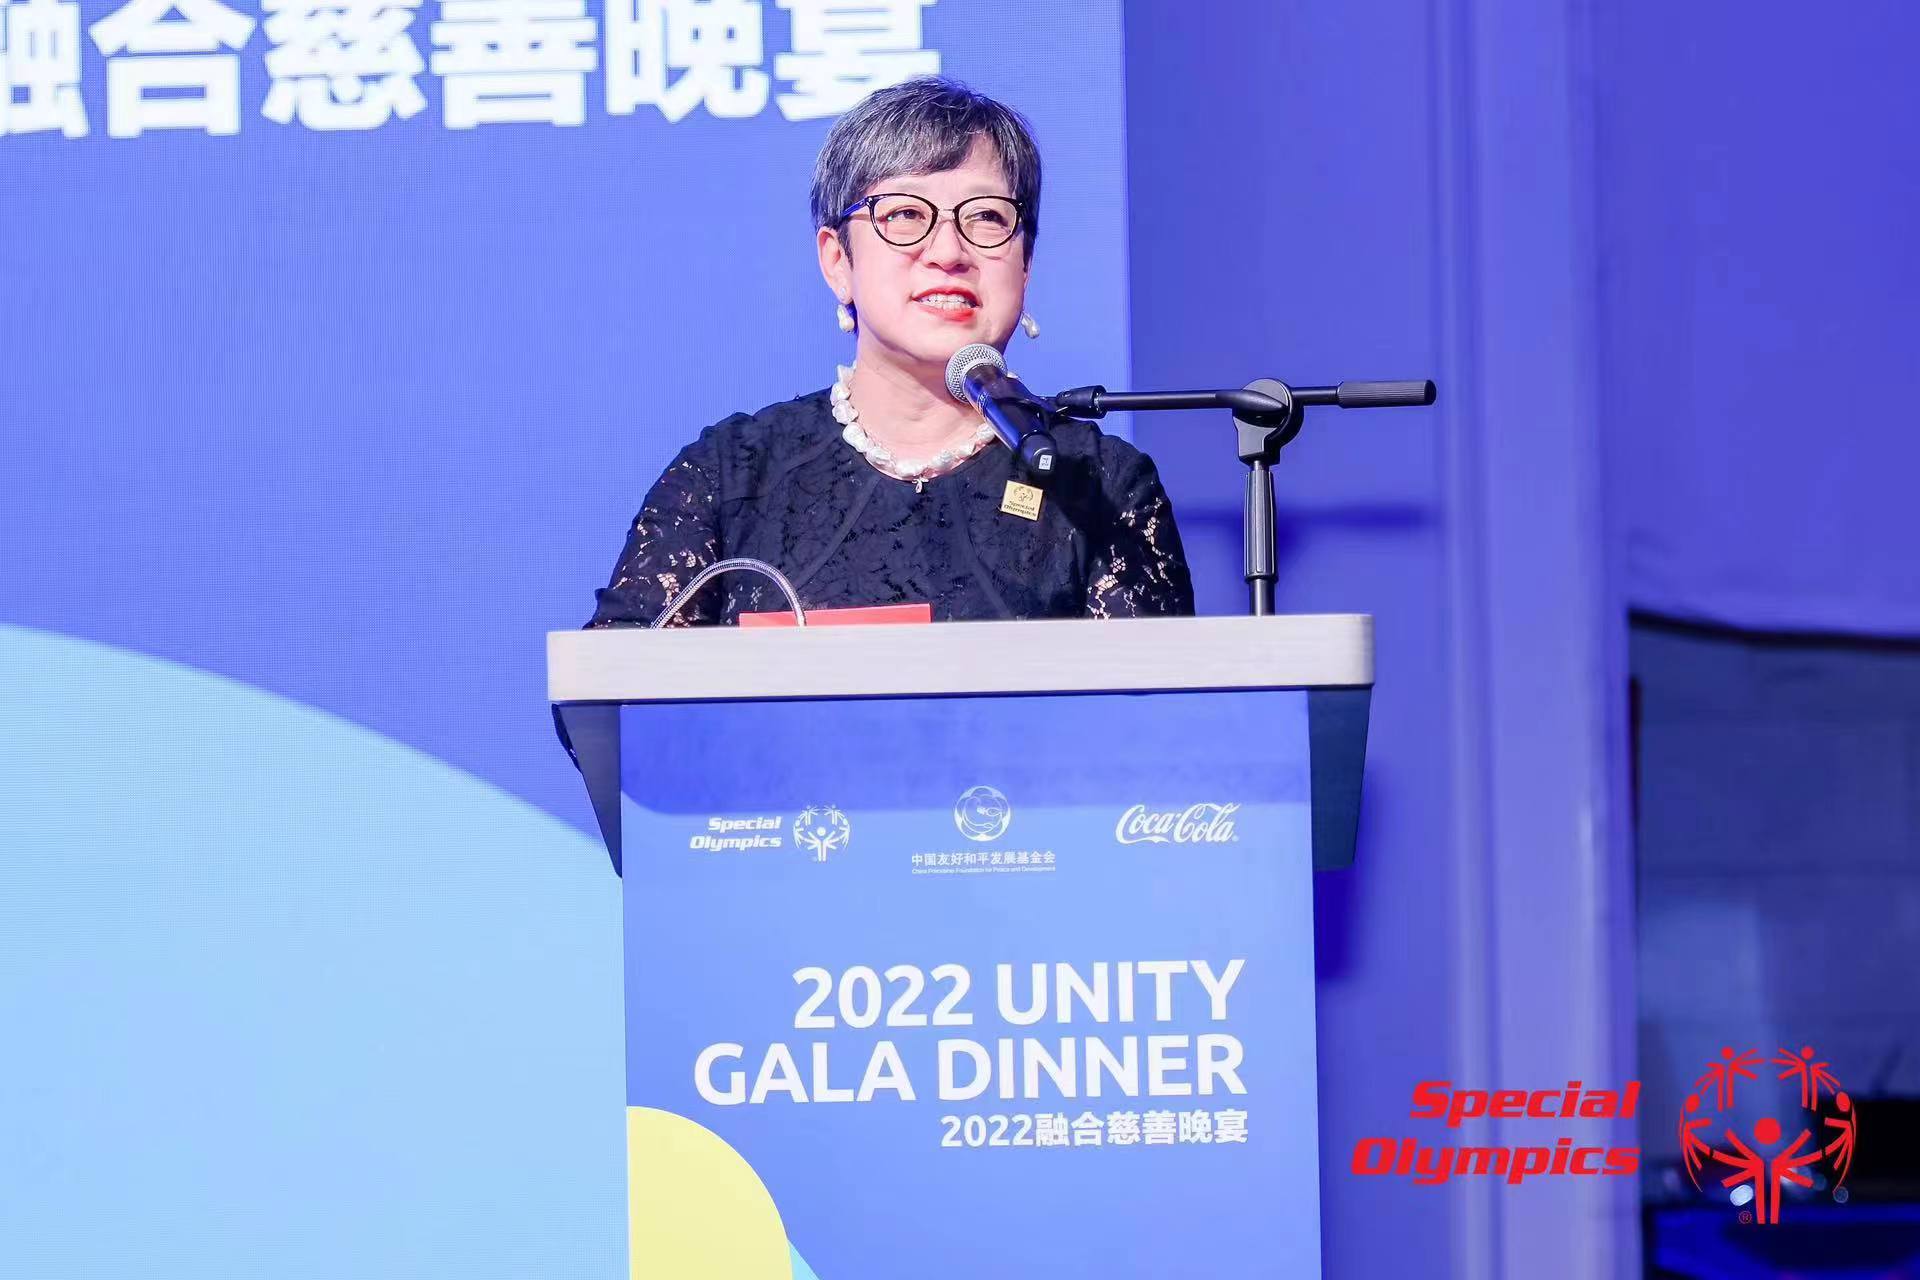 2022融合慈善晚宴在中国澳门隆重举行